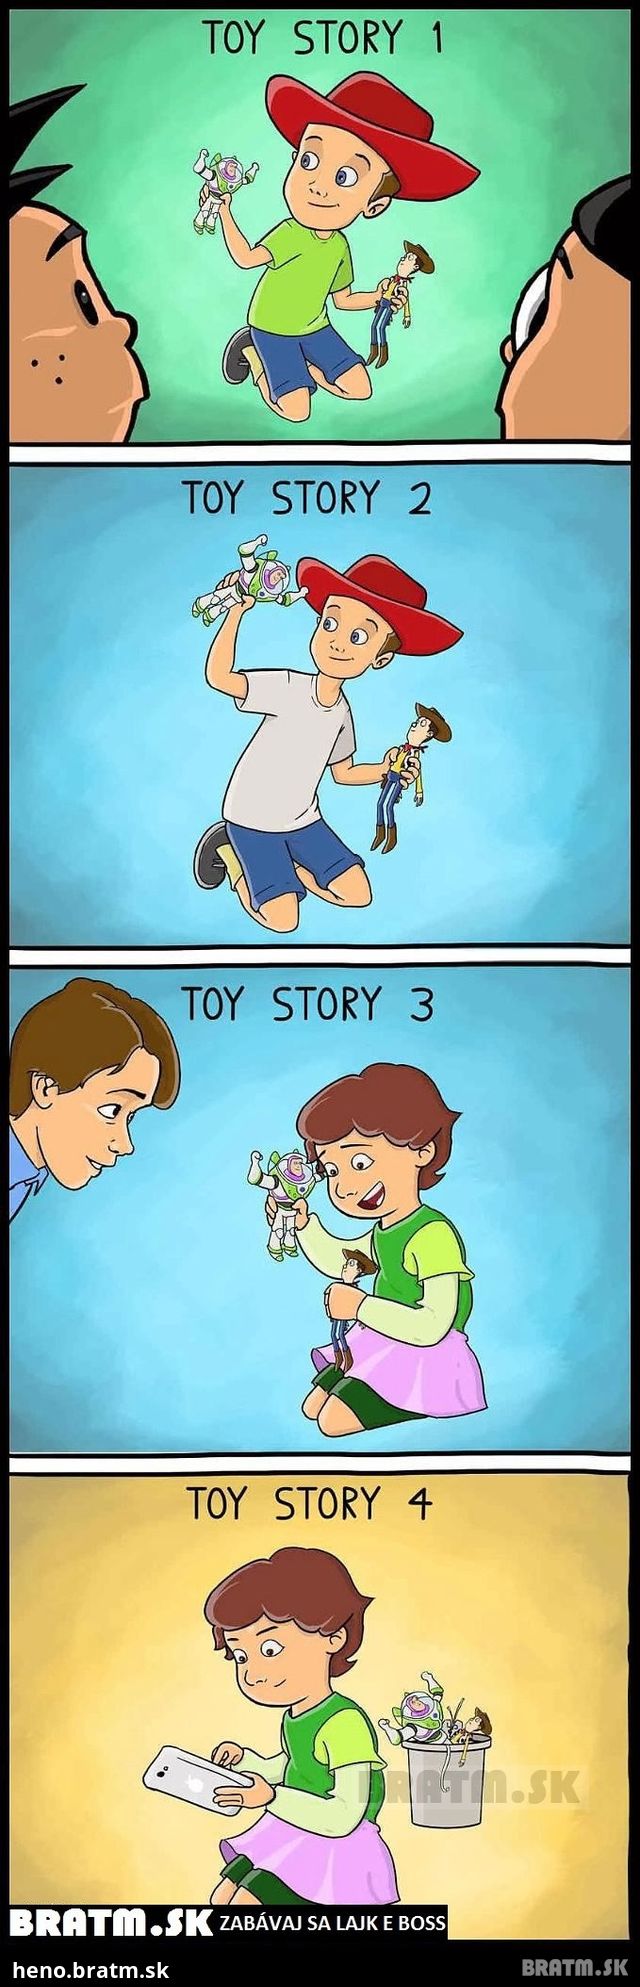 Toy story v dnešnej dobe :D